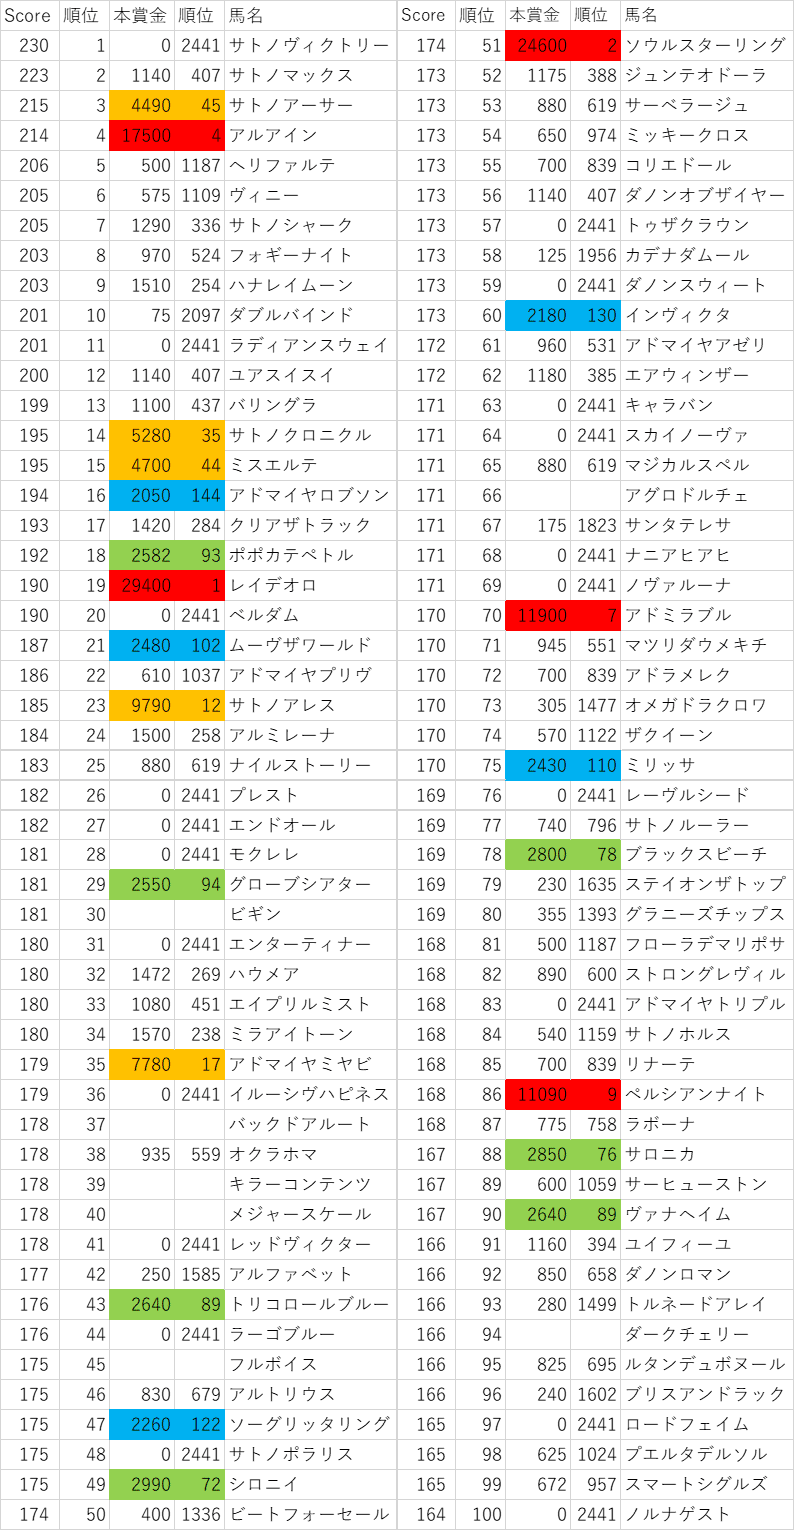 2014年産駒スコア1~100位